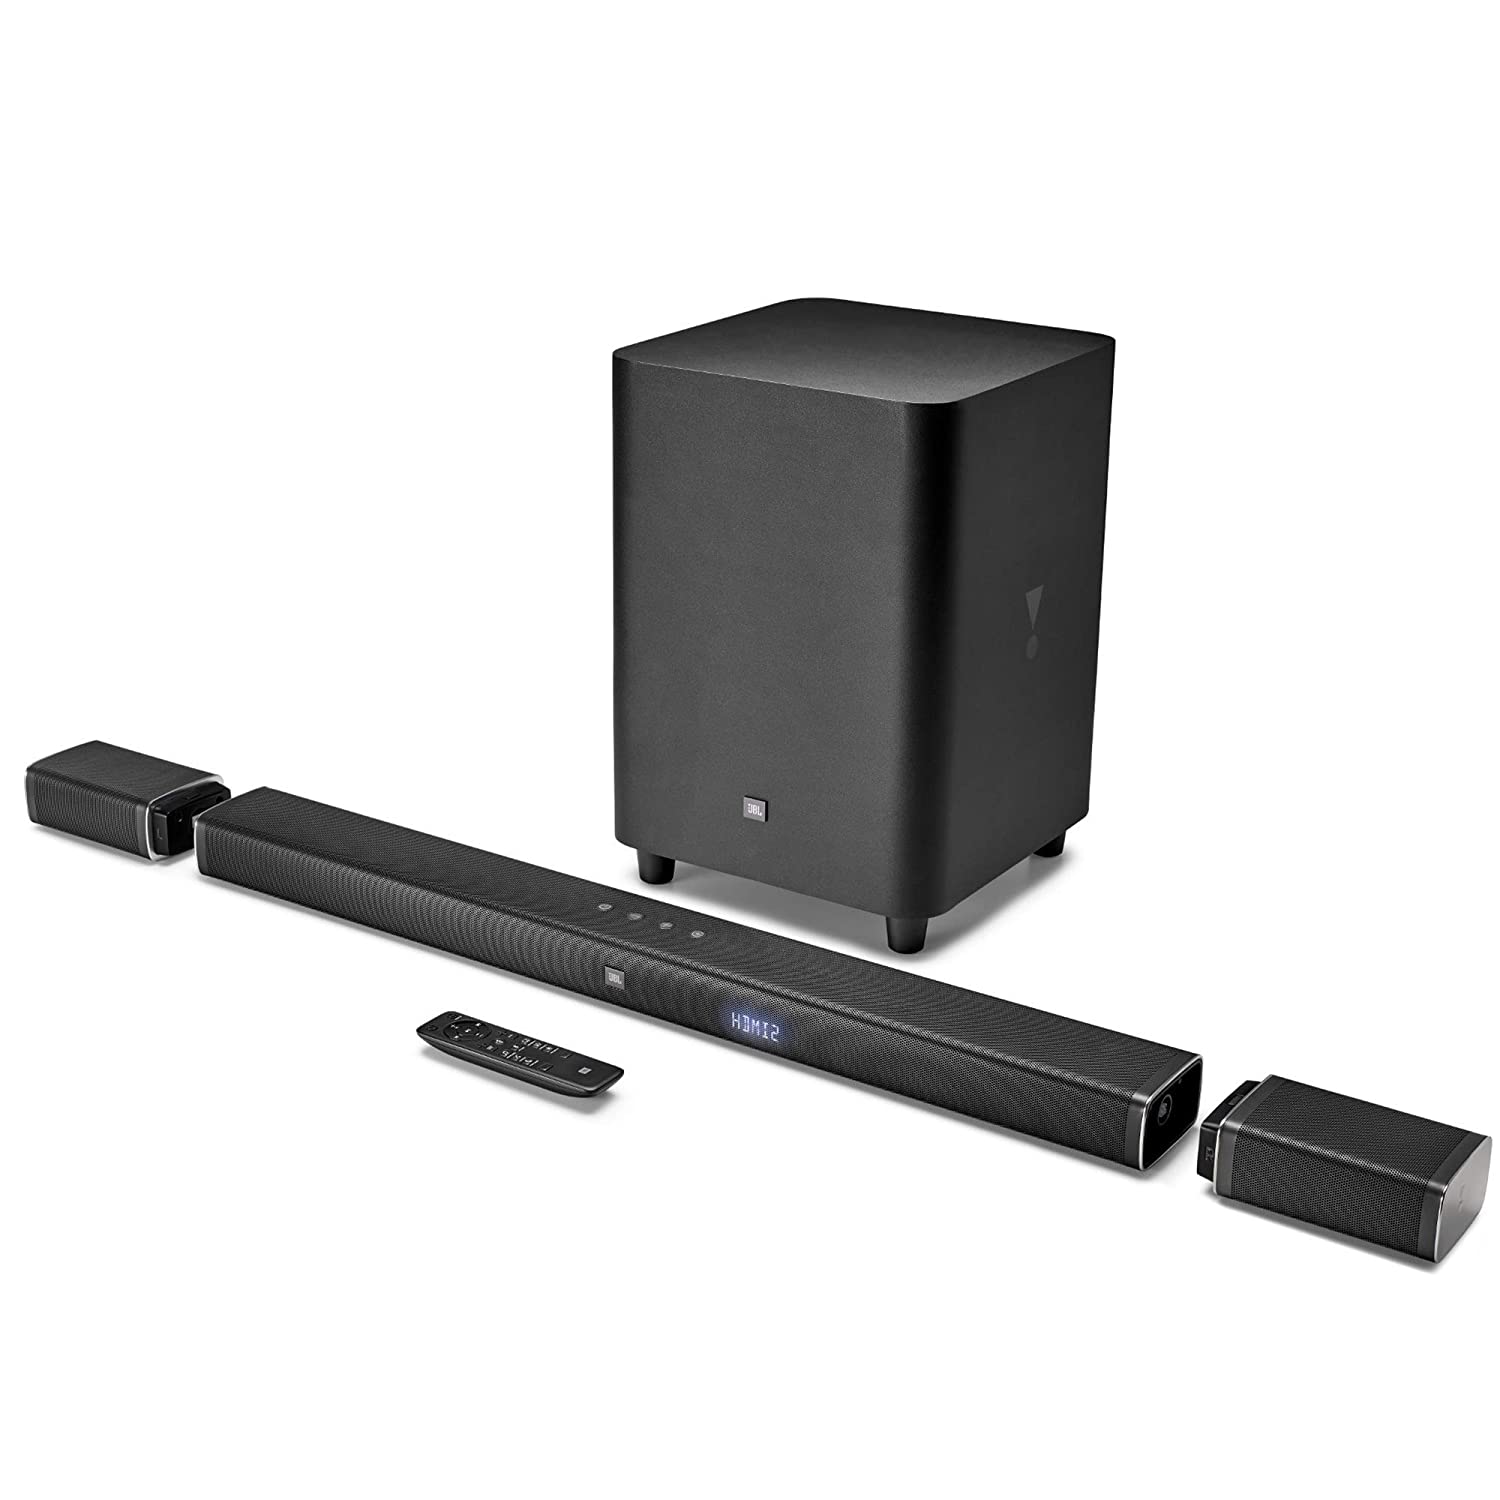 jbl-bar-5-1-powerful-4k-uhd-soundbar-with-wireless-surround-speakers